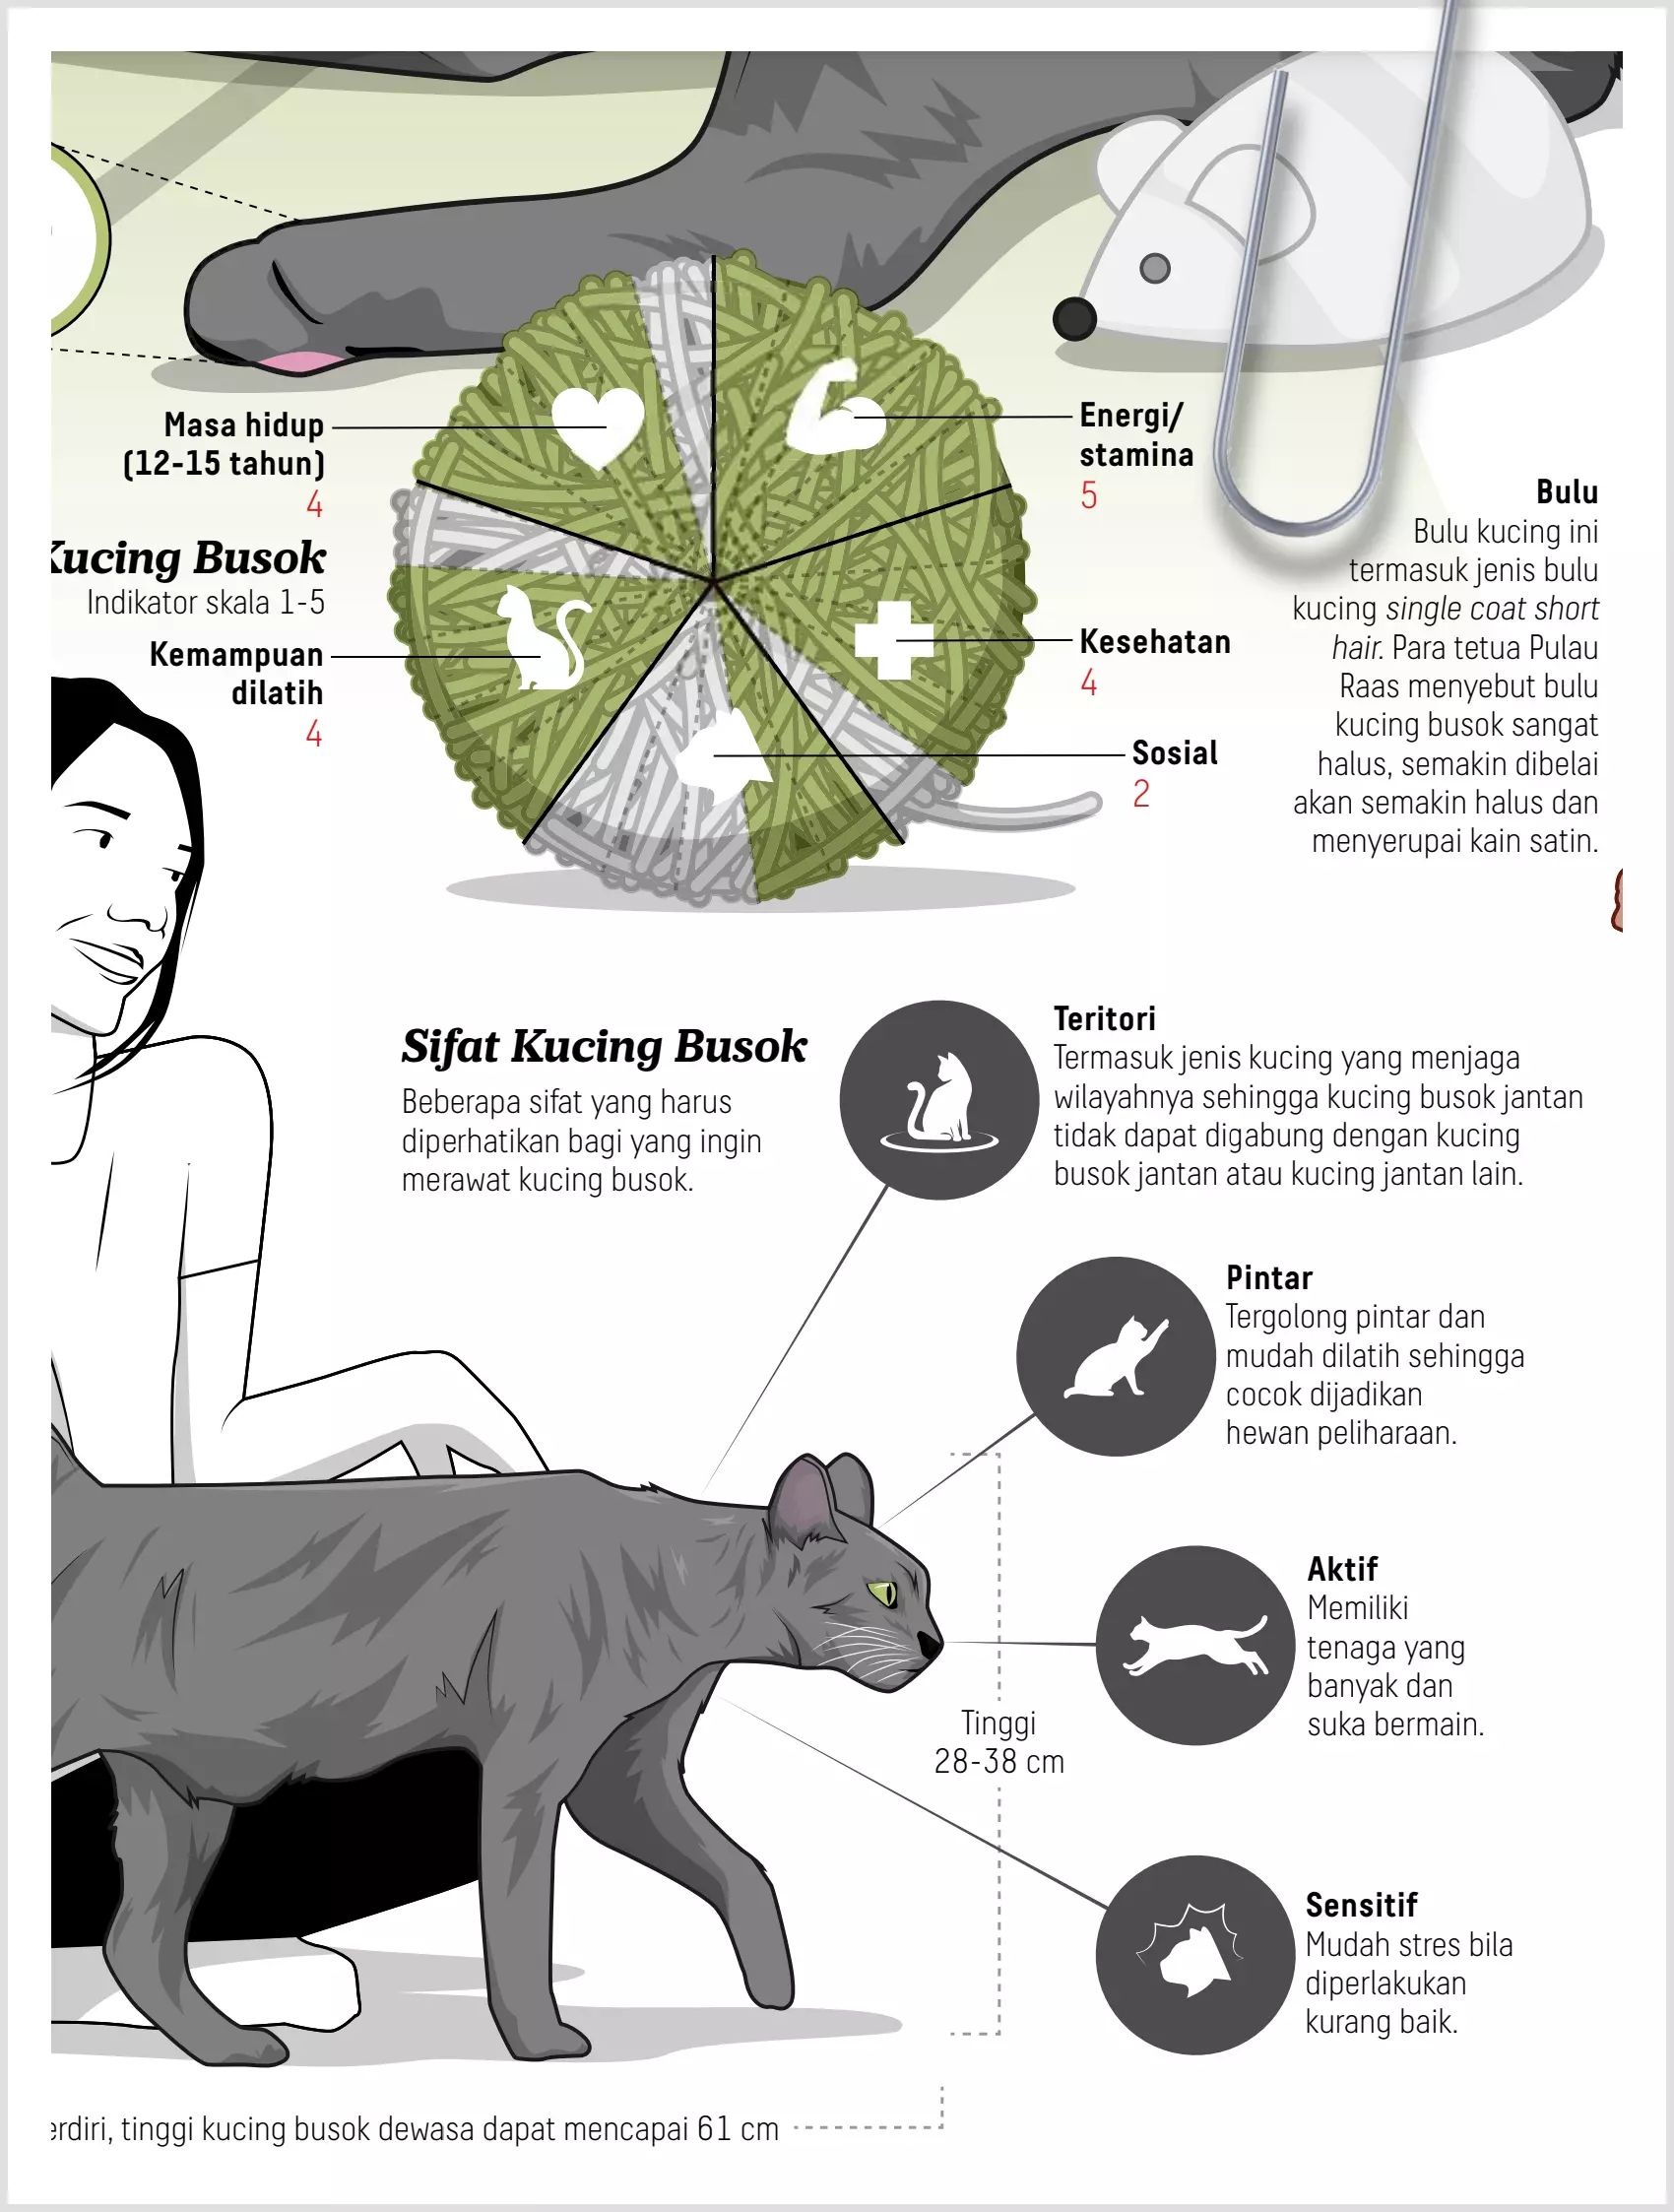 Infografik: Kucing cakep busok dari Madura 